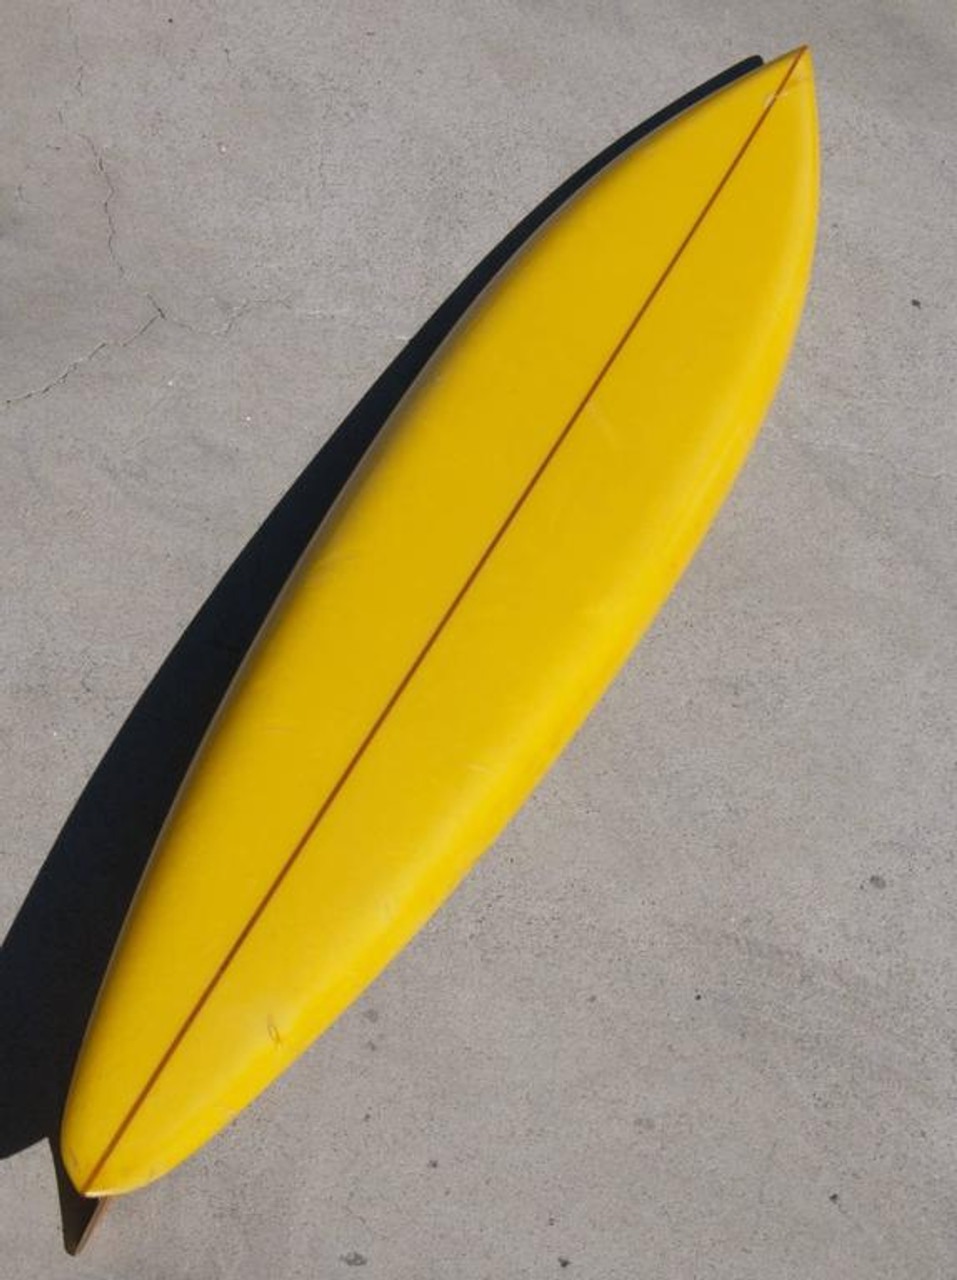 Surfboard Yellow, Gentleman's Gray, Mizzle: How do paint companies